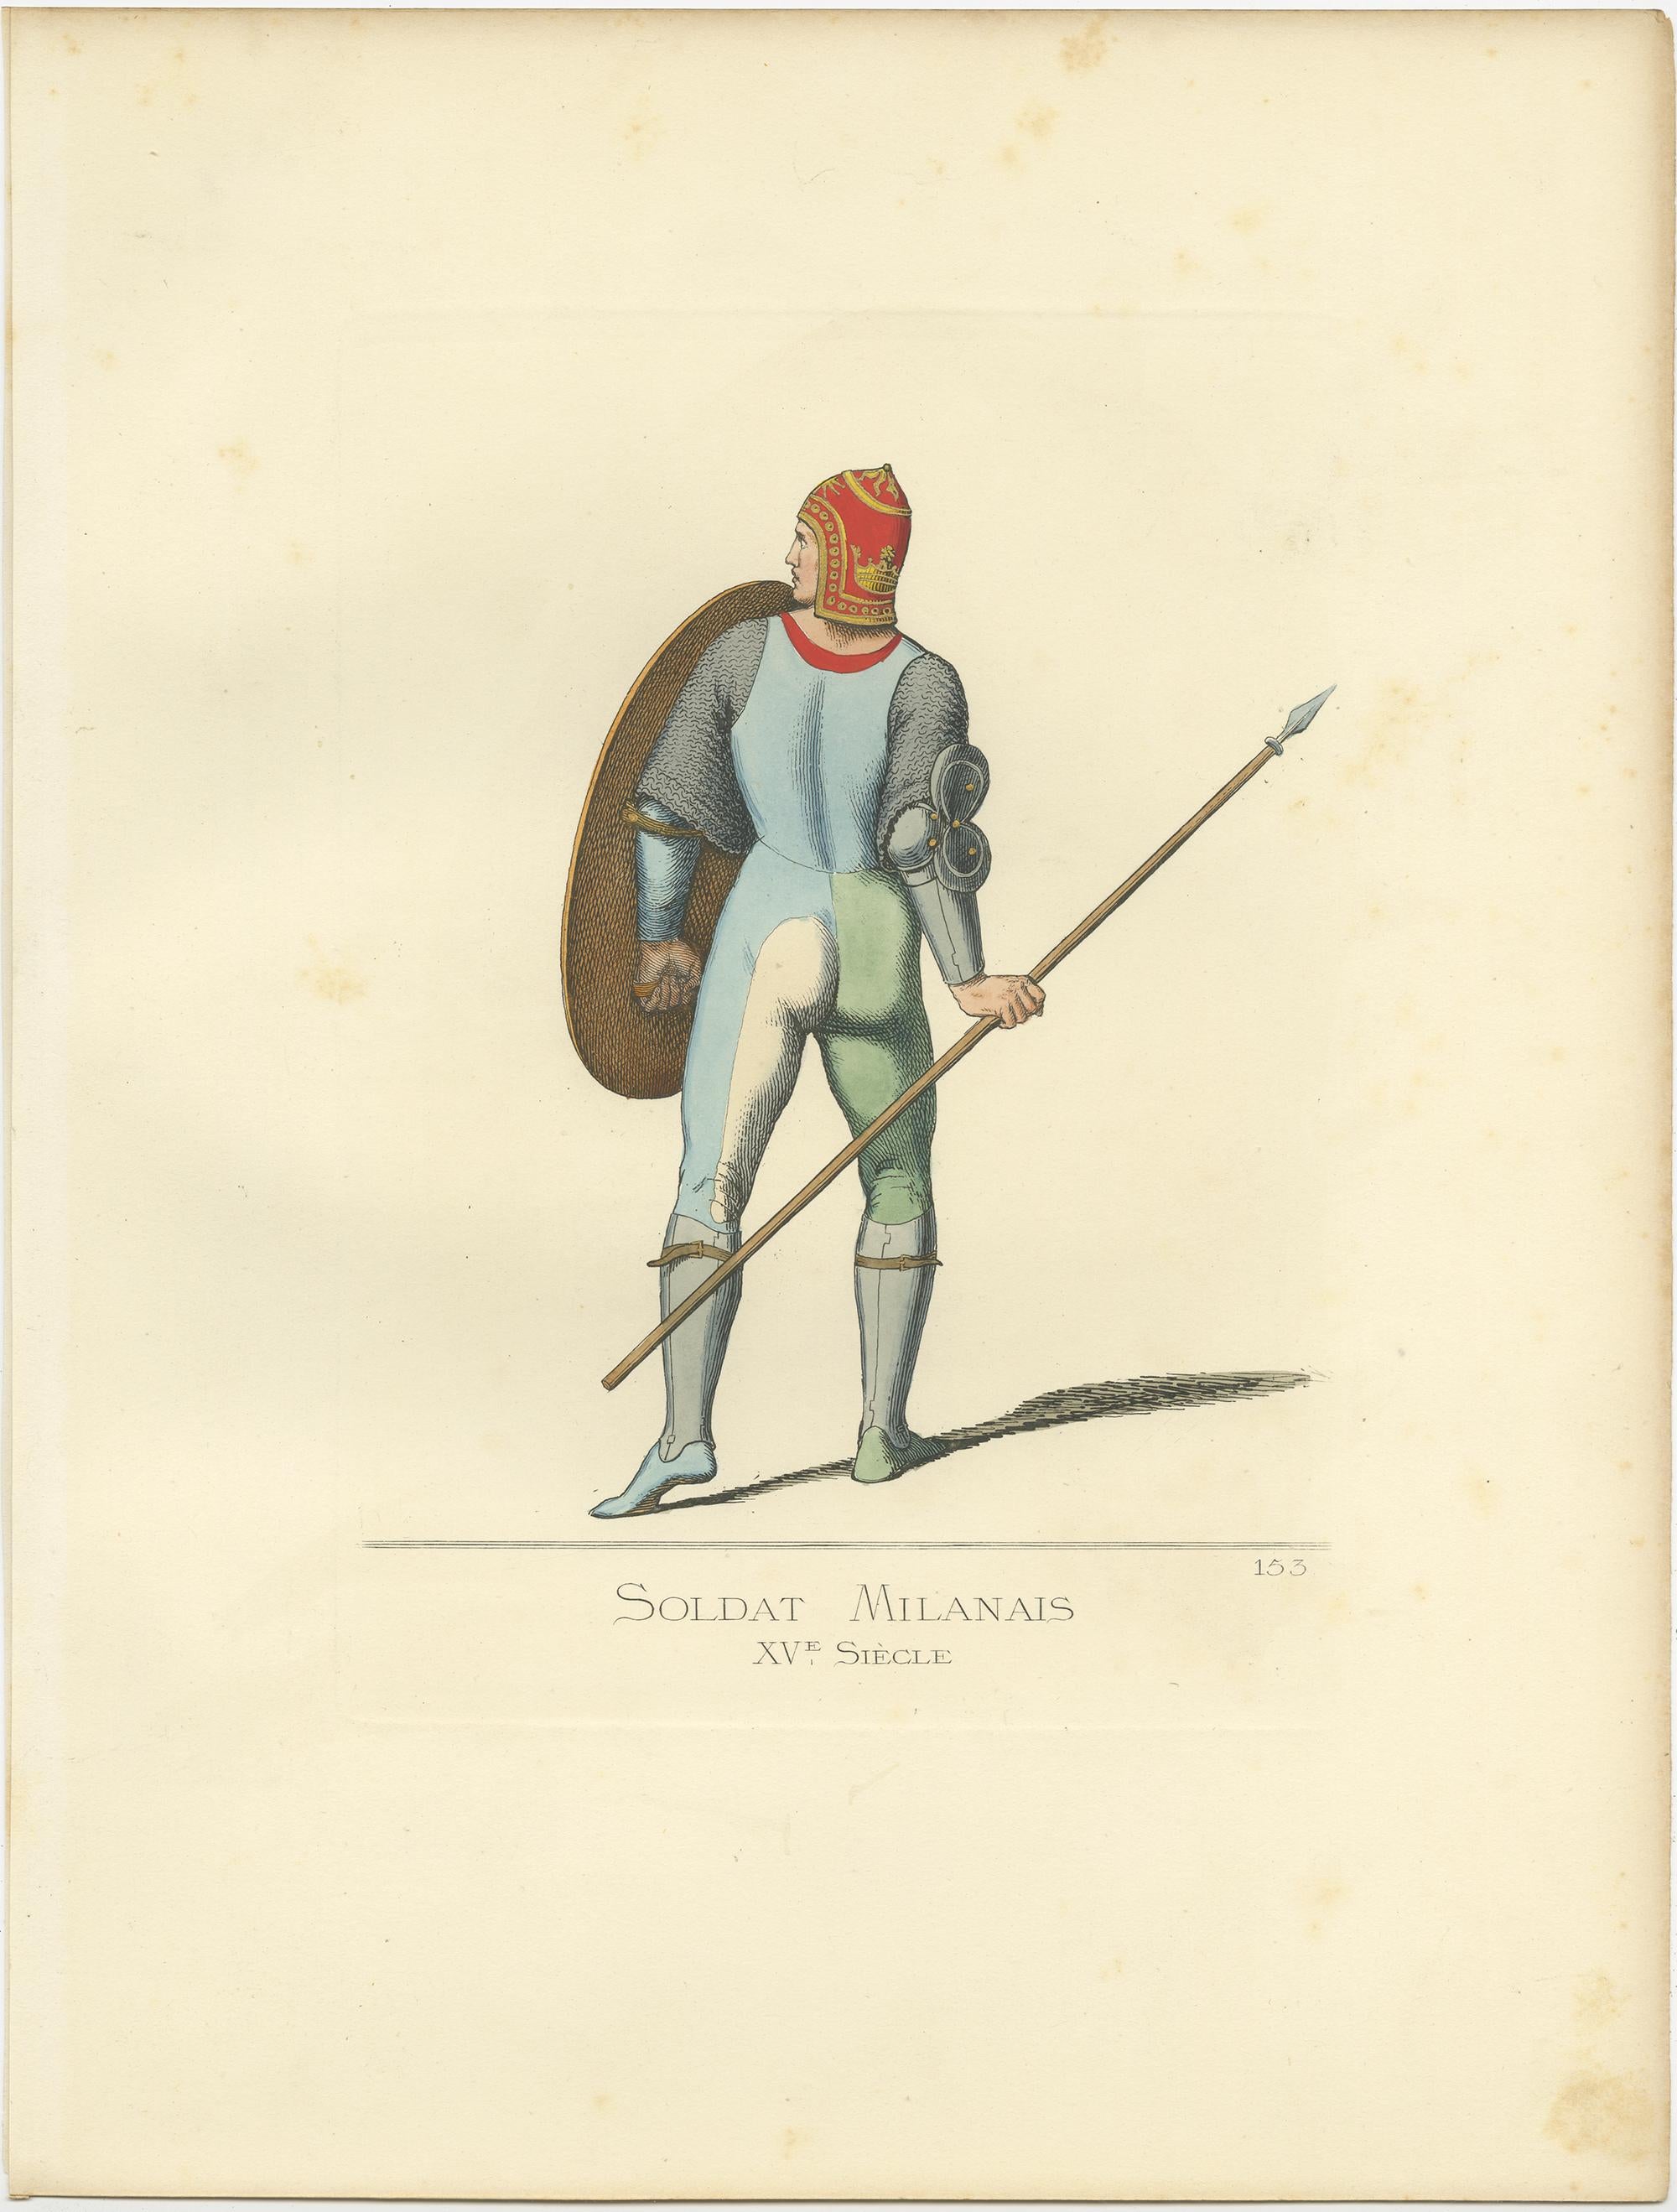 15th century soldier